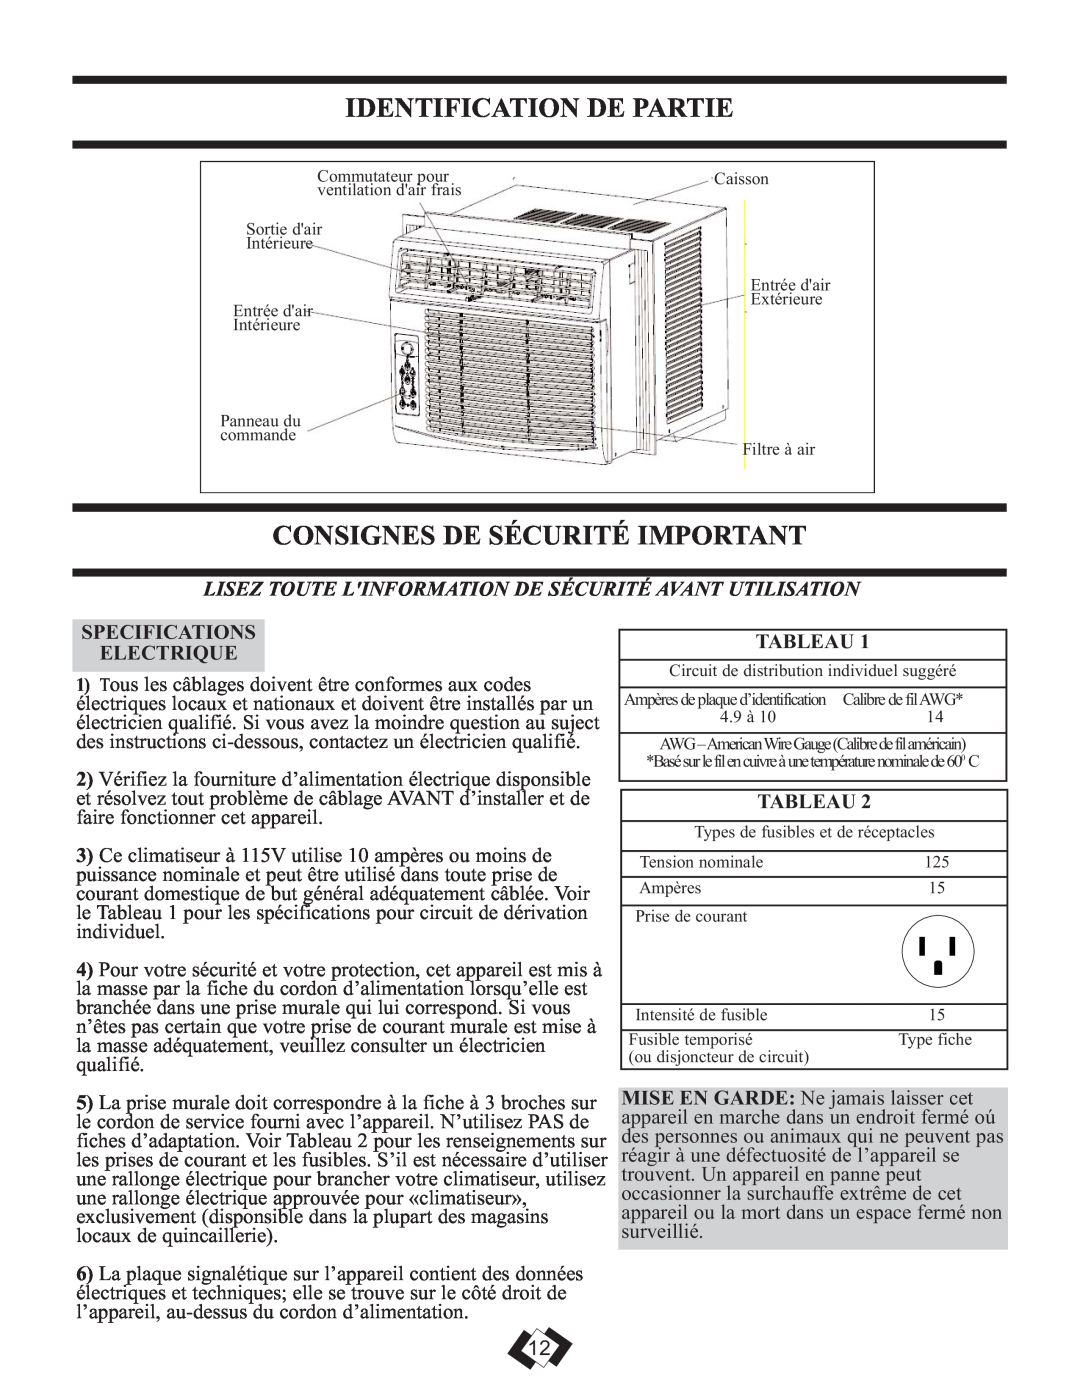 Danby DAC6010E warranty Identification De Partie, Consignes De Sécurité Important, Specifications Electrique, Tableau 